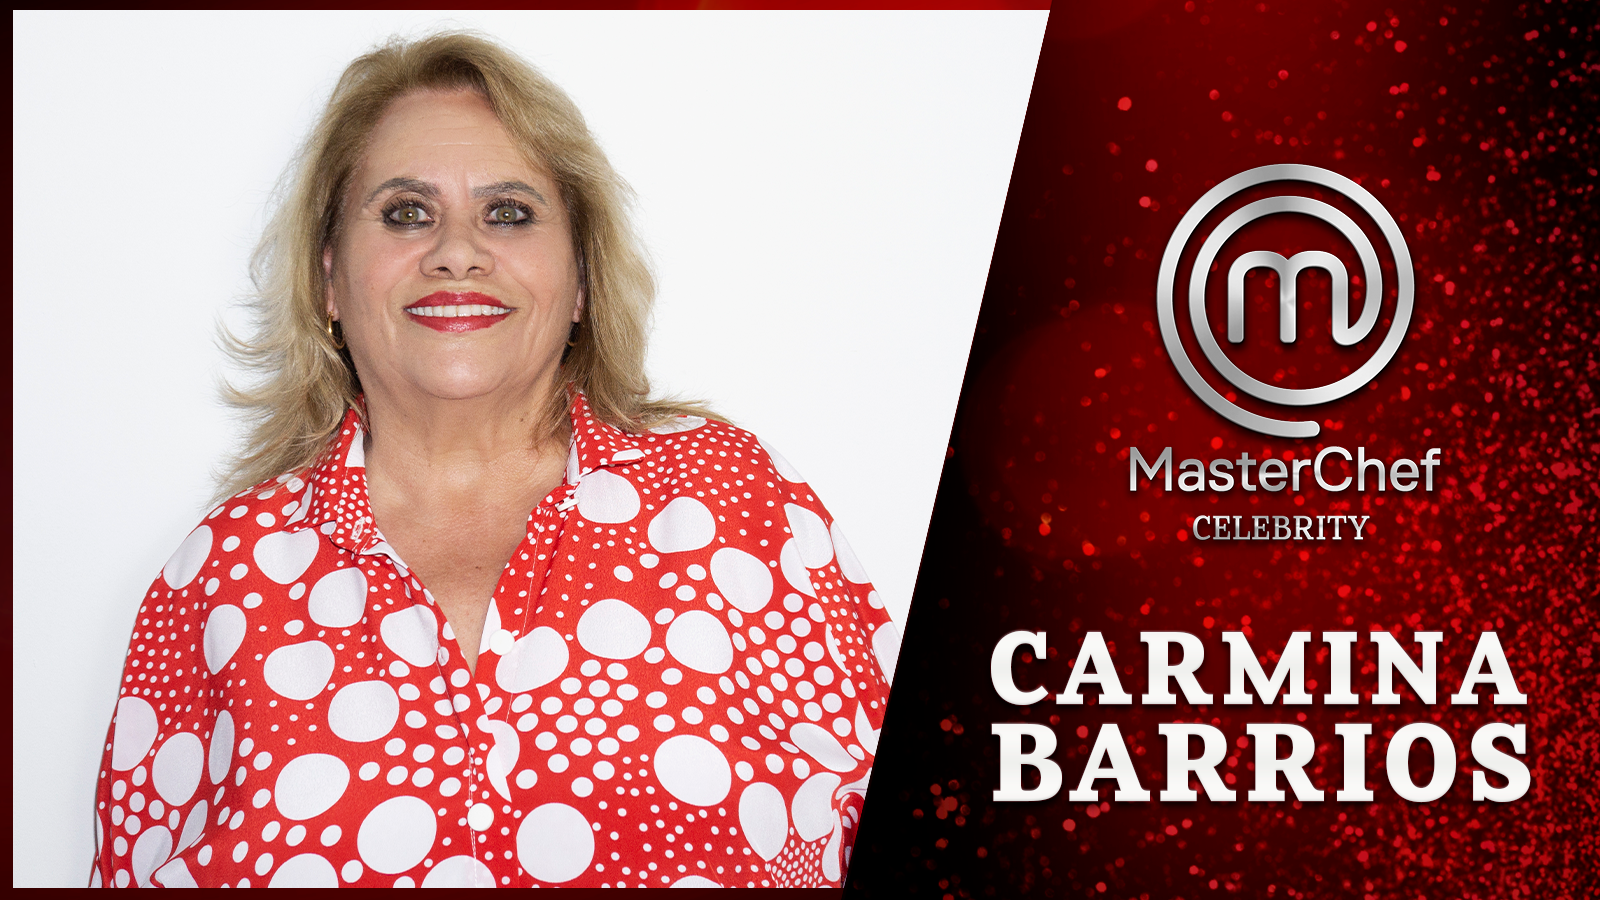 Carmina Barrios, concursante confirmada de MasterChef Celebrity 6